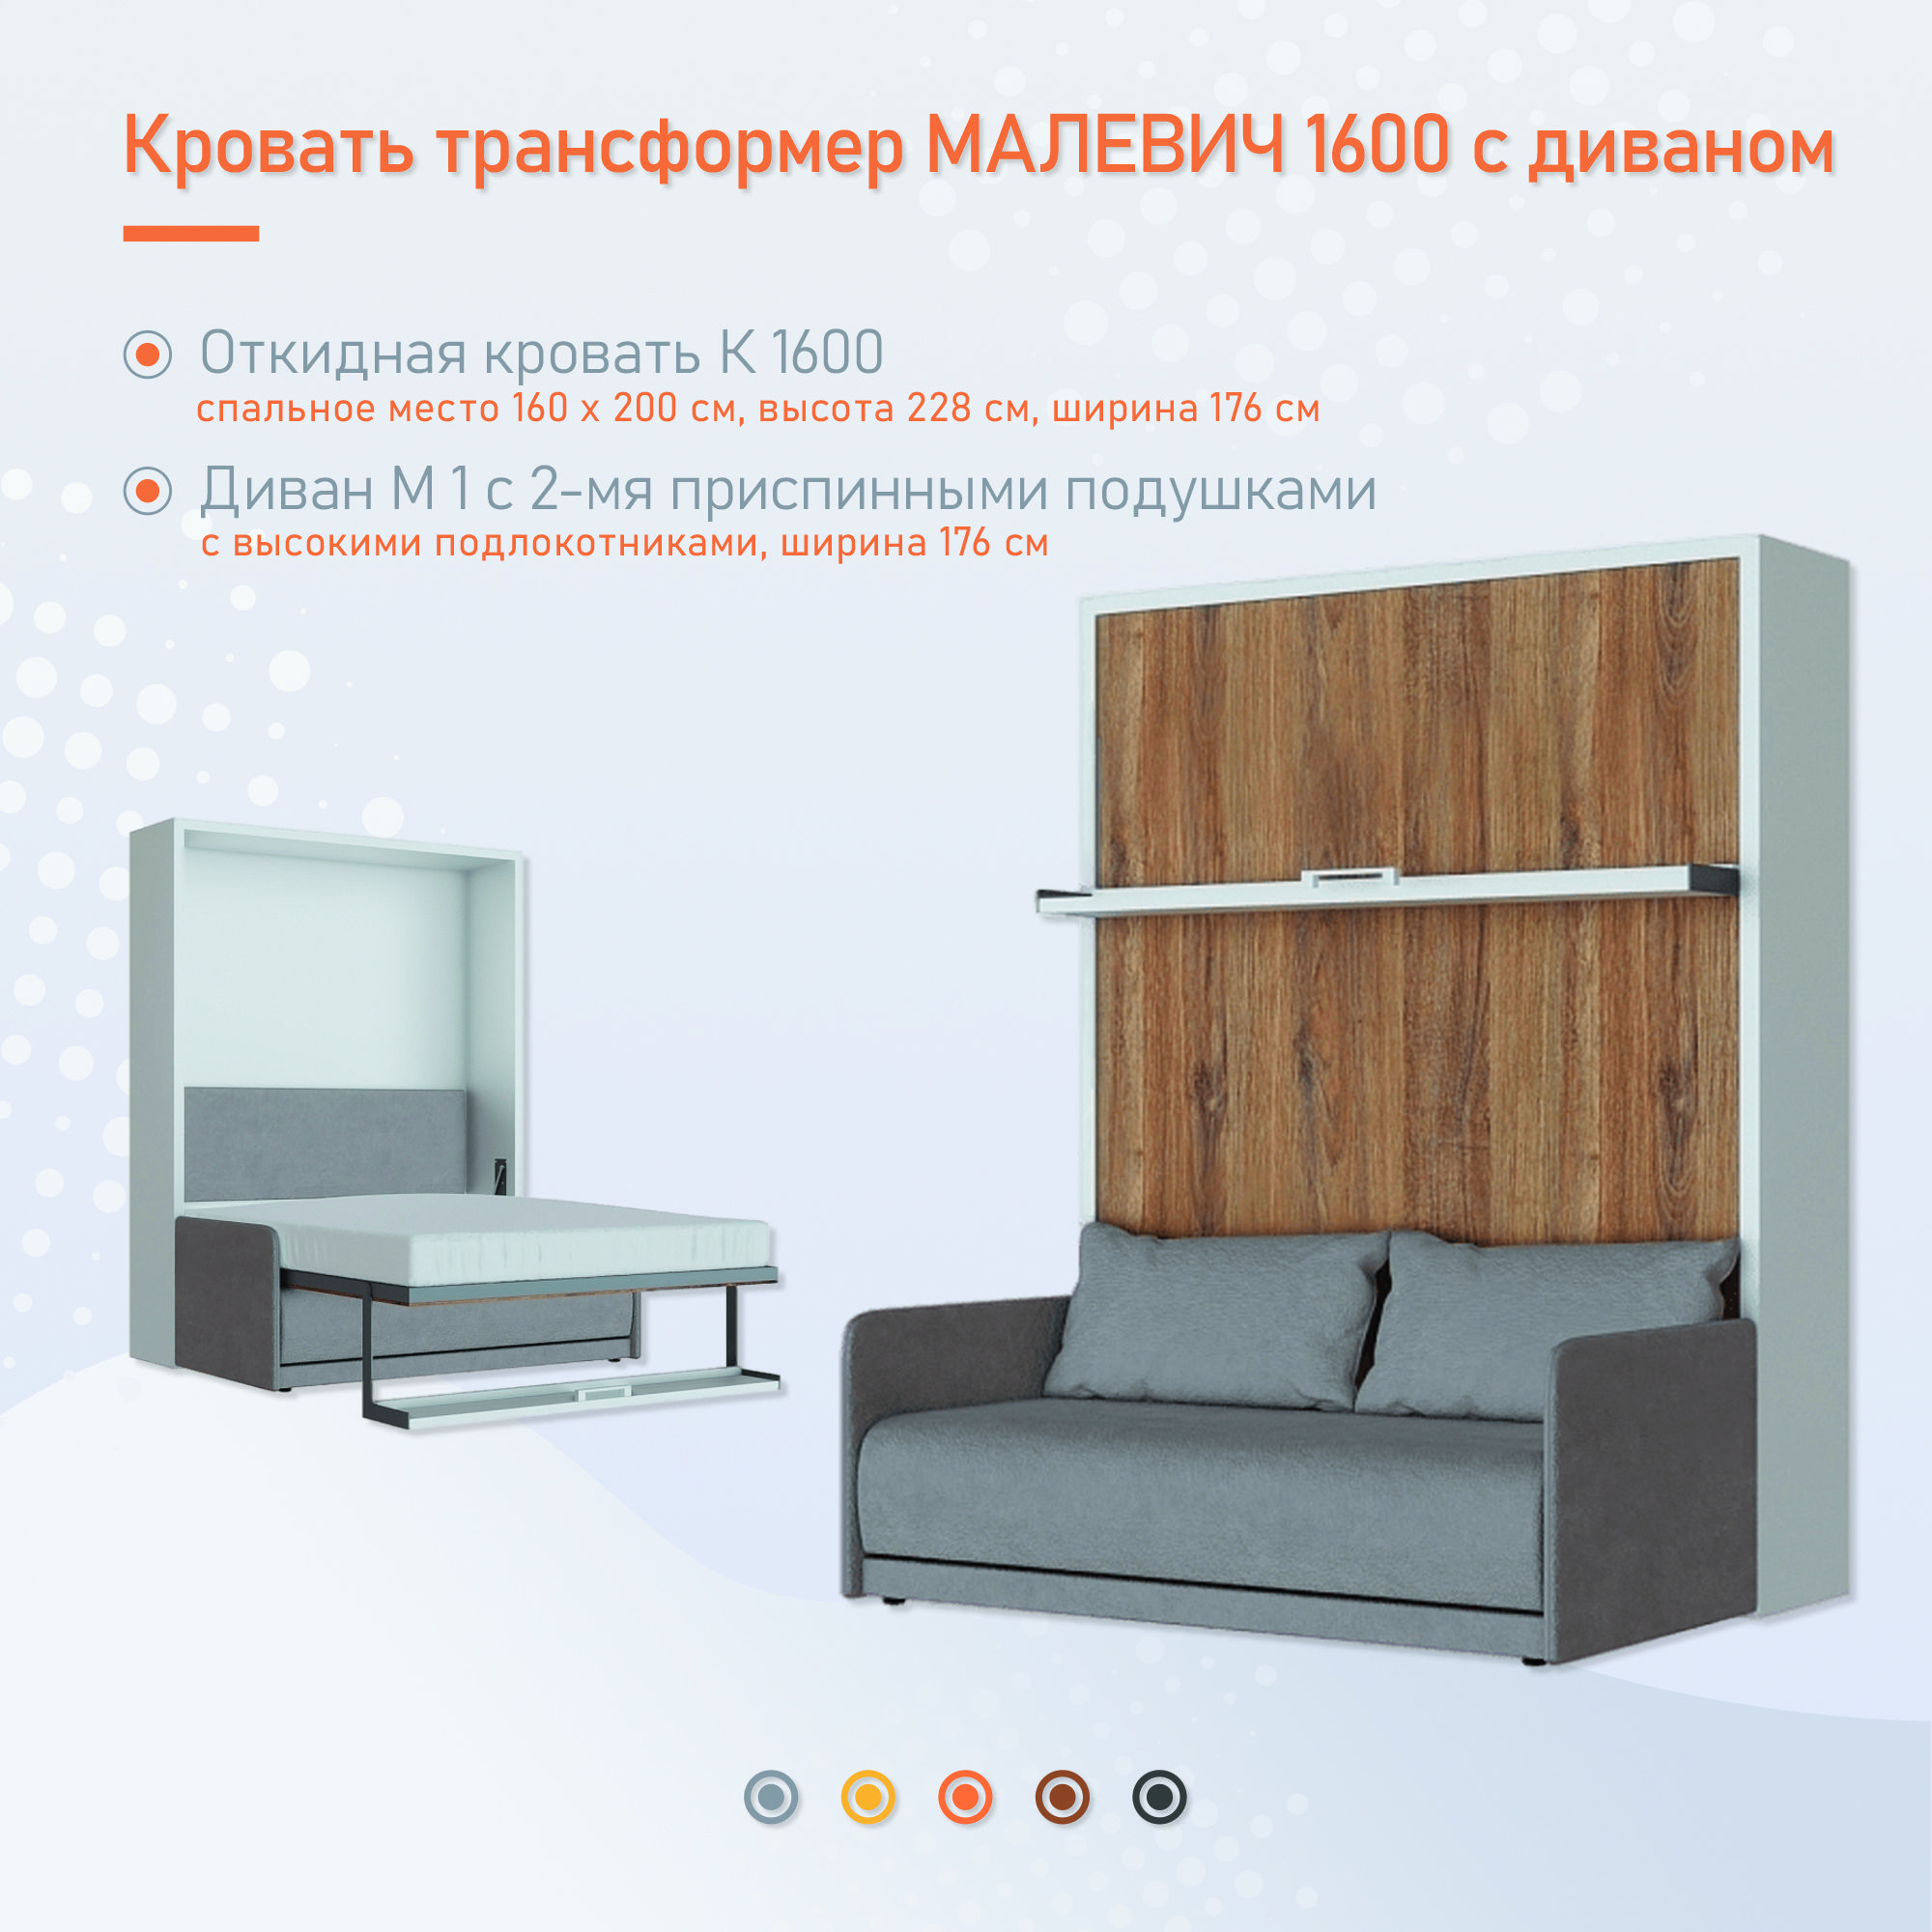 Кровать трансформер Малевич 1600 с диваном